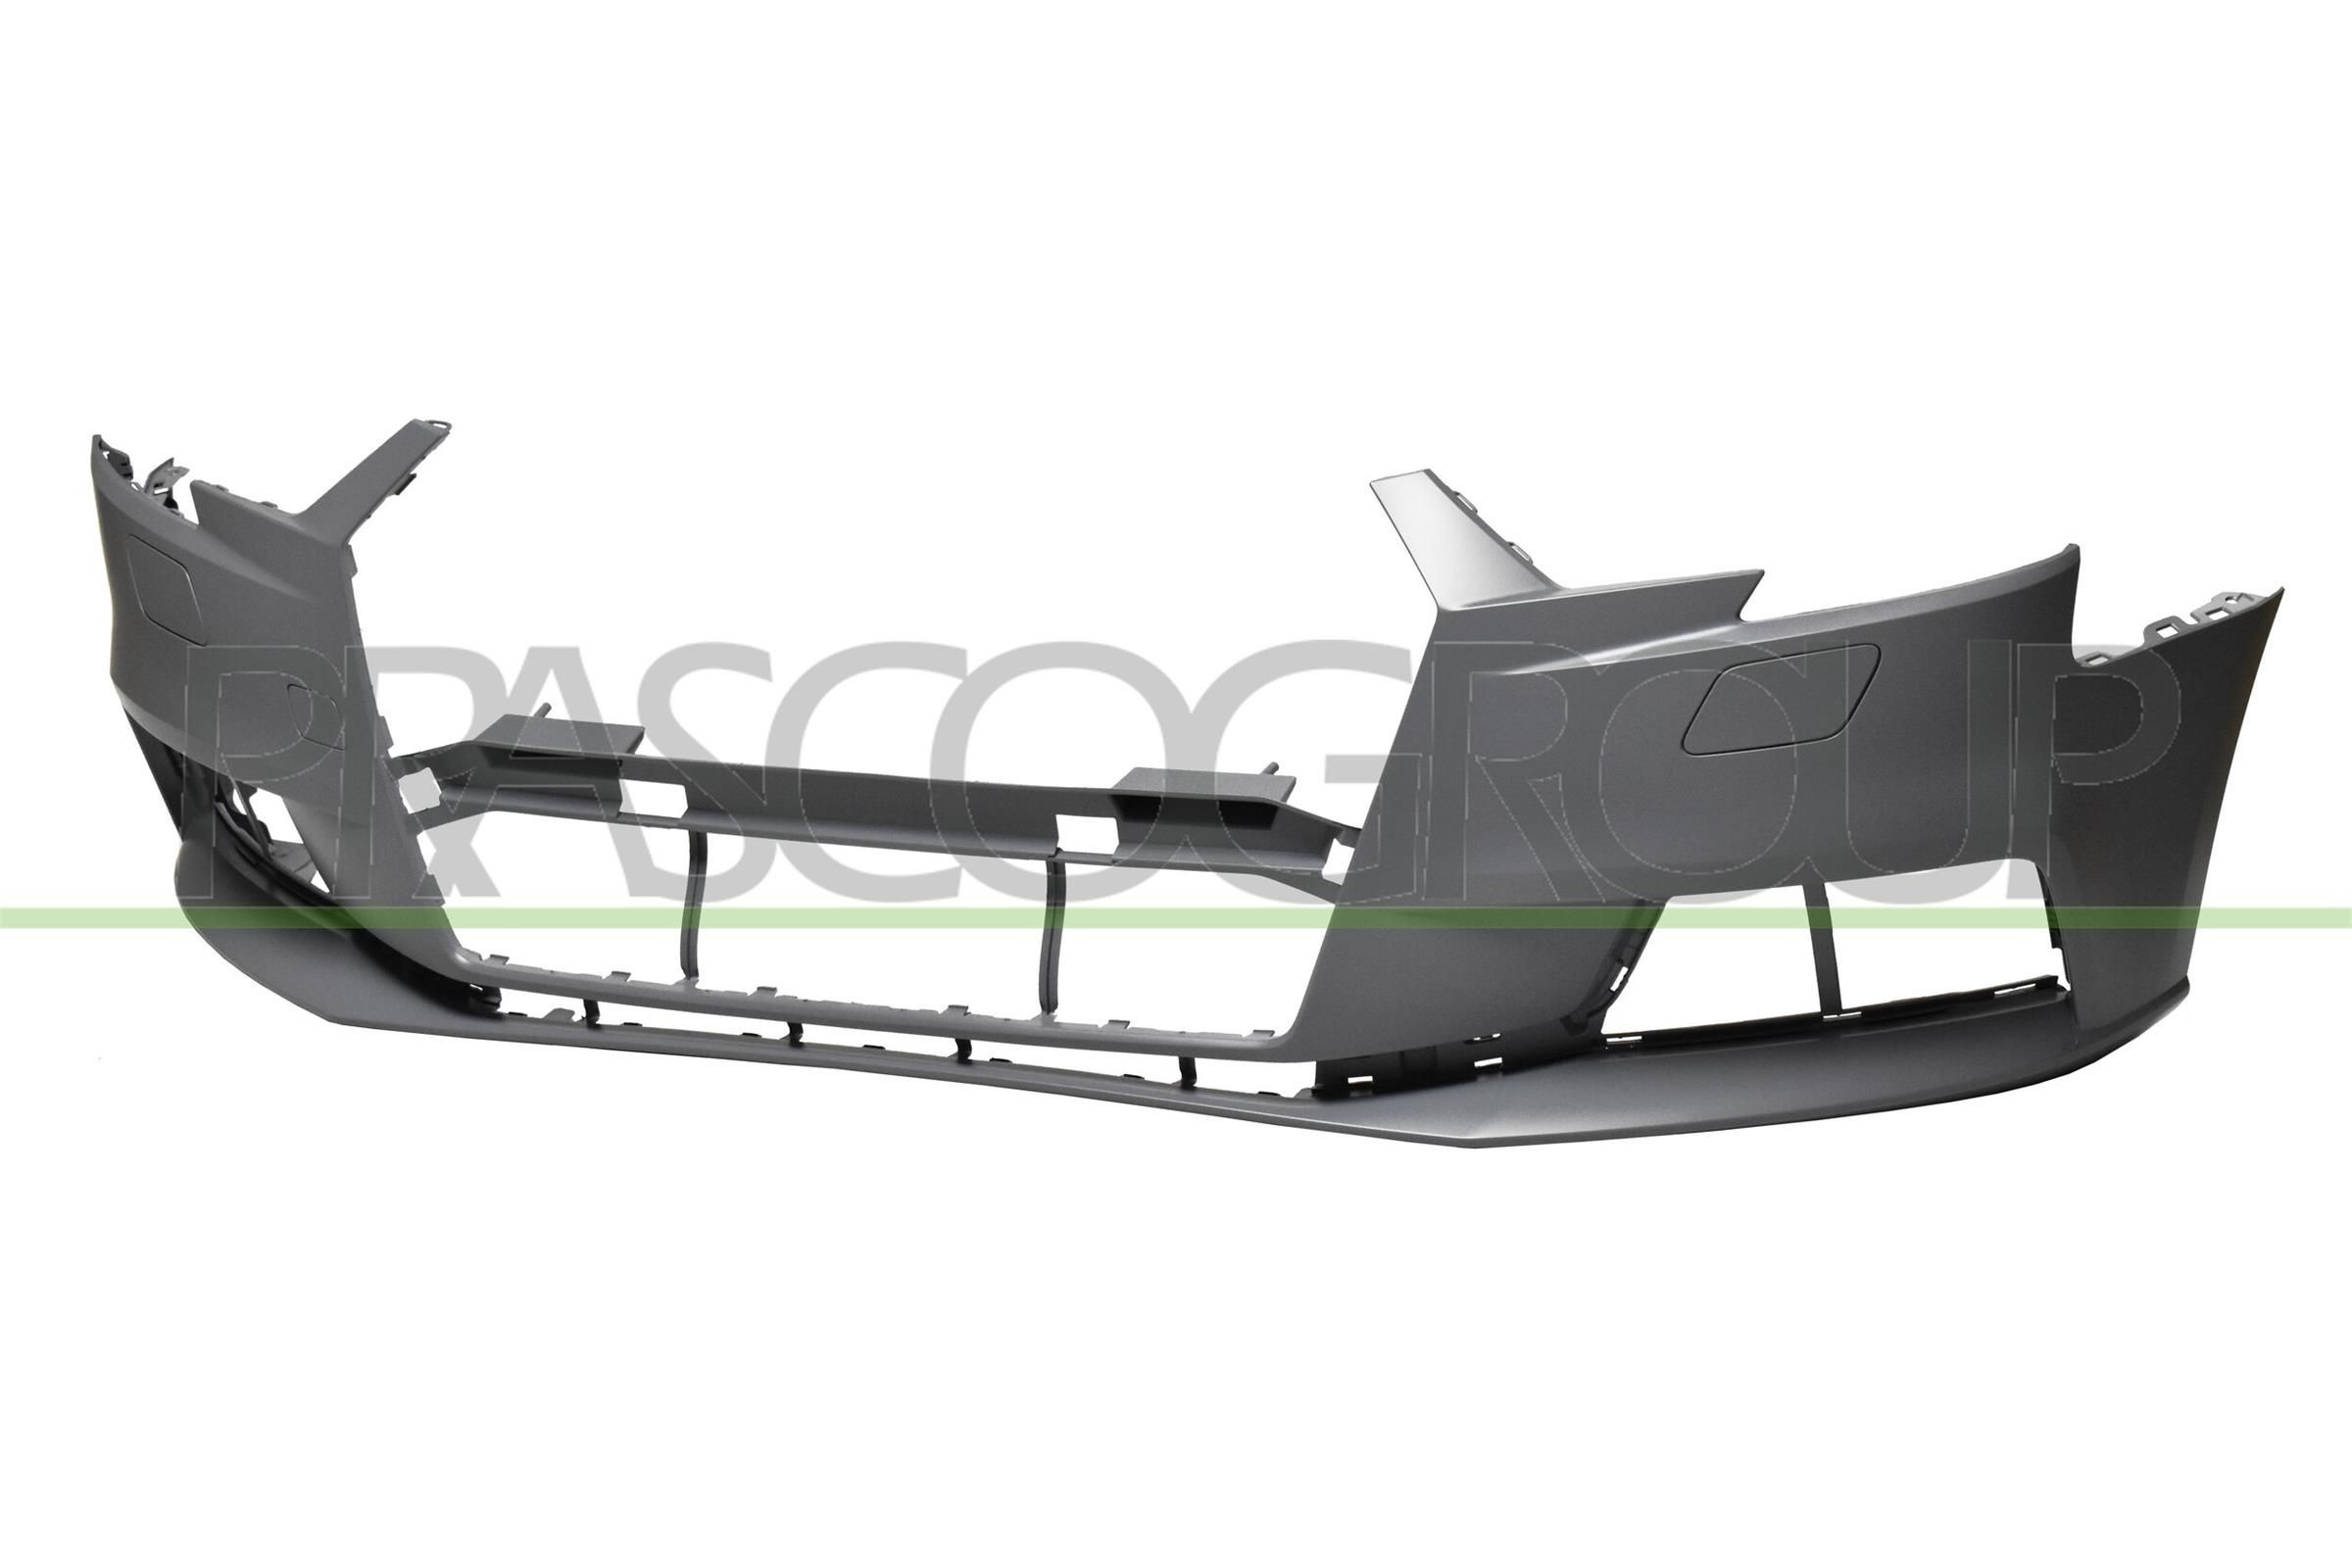 Nebelscheinwerfer für AUDI A3 8v hinten und vorne kaufen